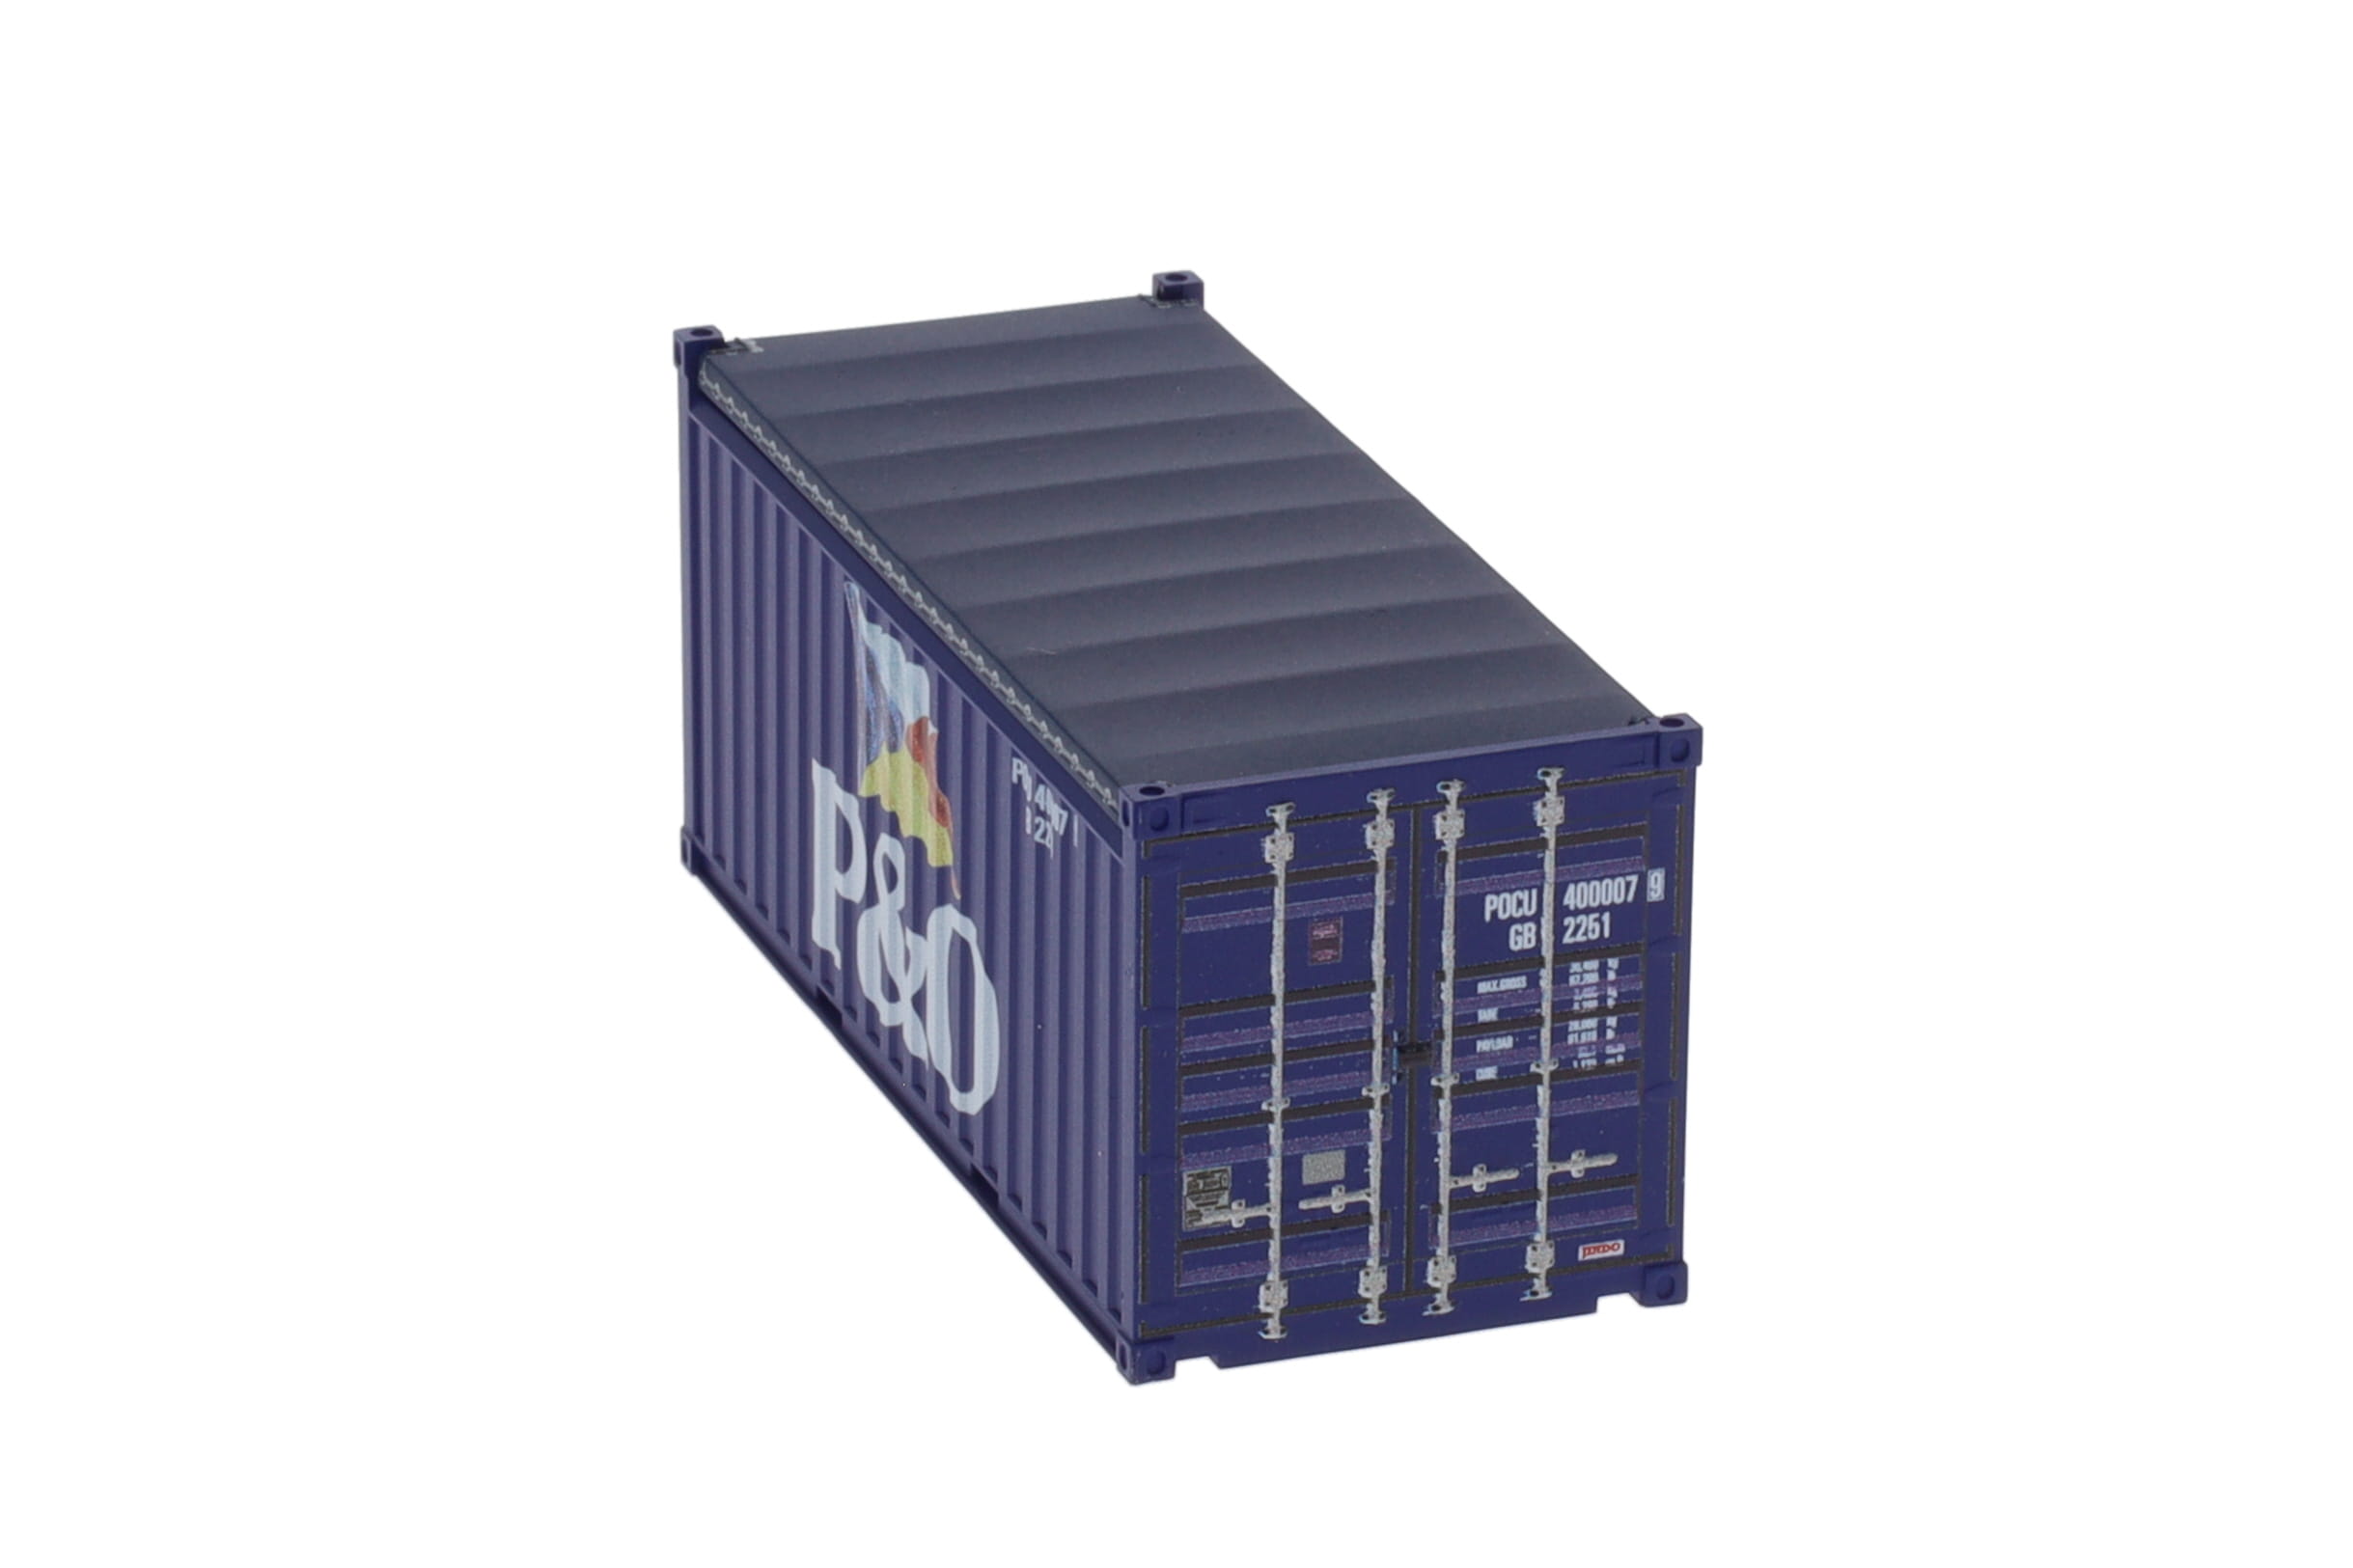 1:87 20´OT Container P&O blau altes Logo, Ct20´ Open-Top (GB 2251) mit blauem Planendach, Behälternummer: POCU 400007